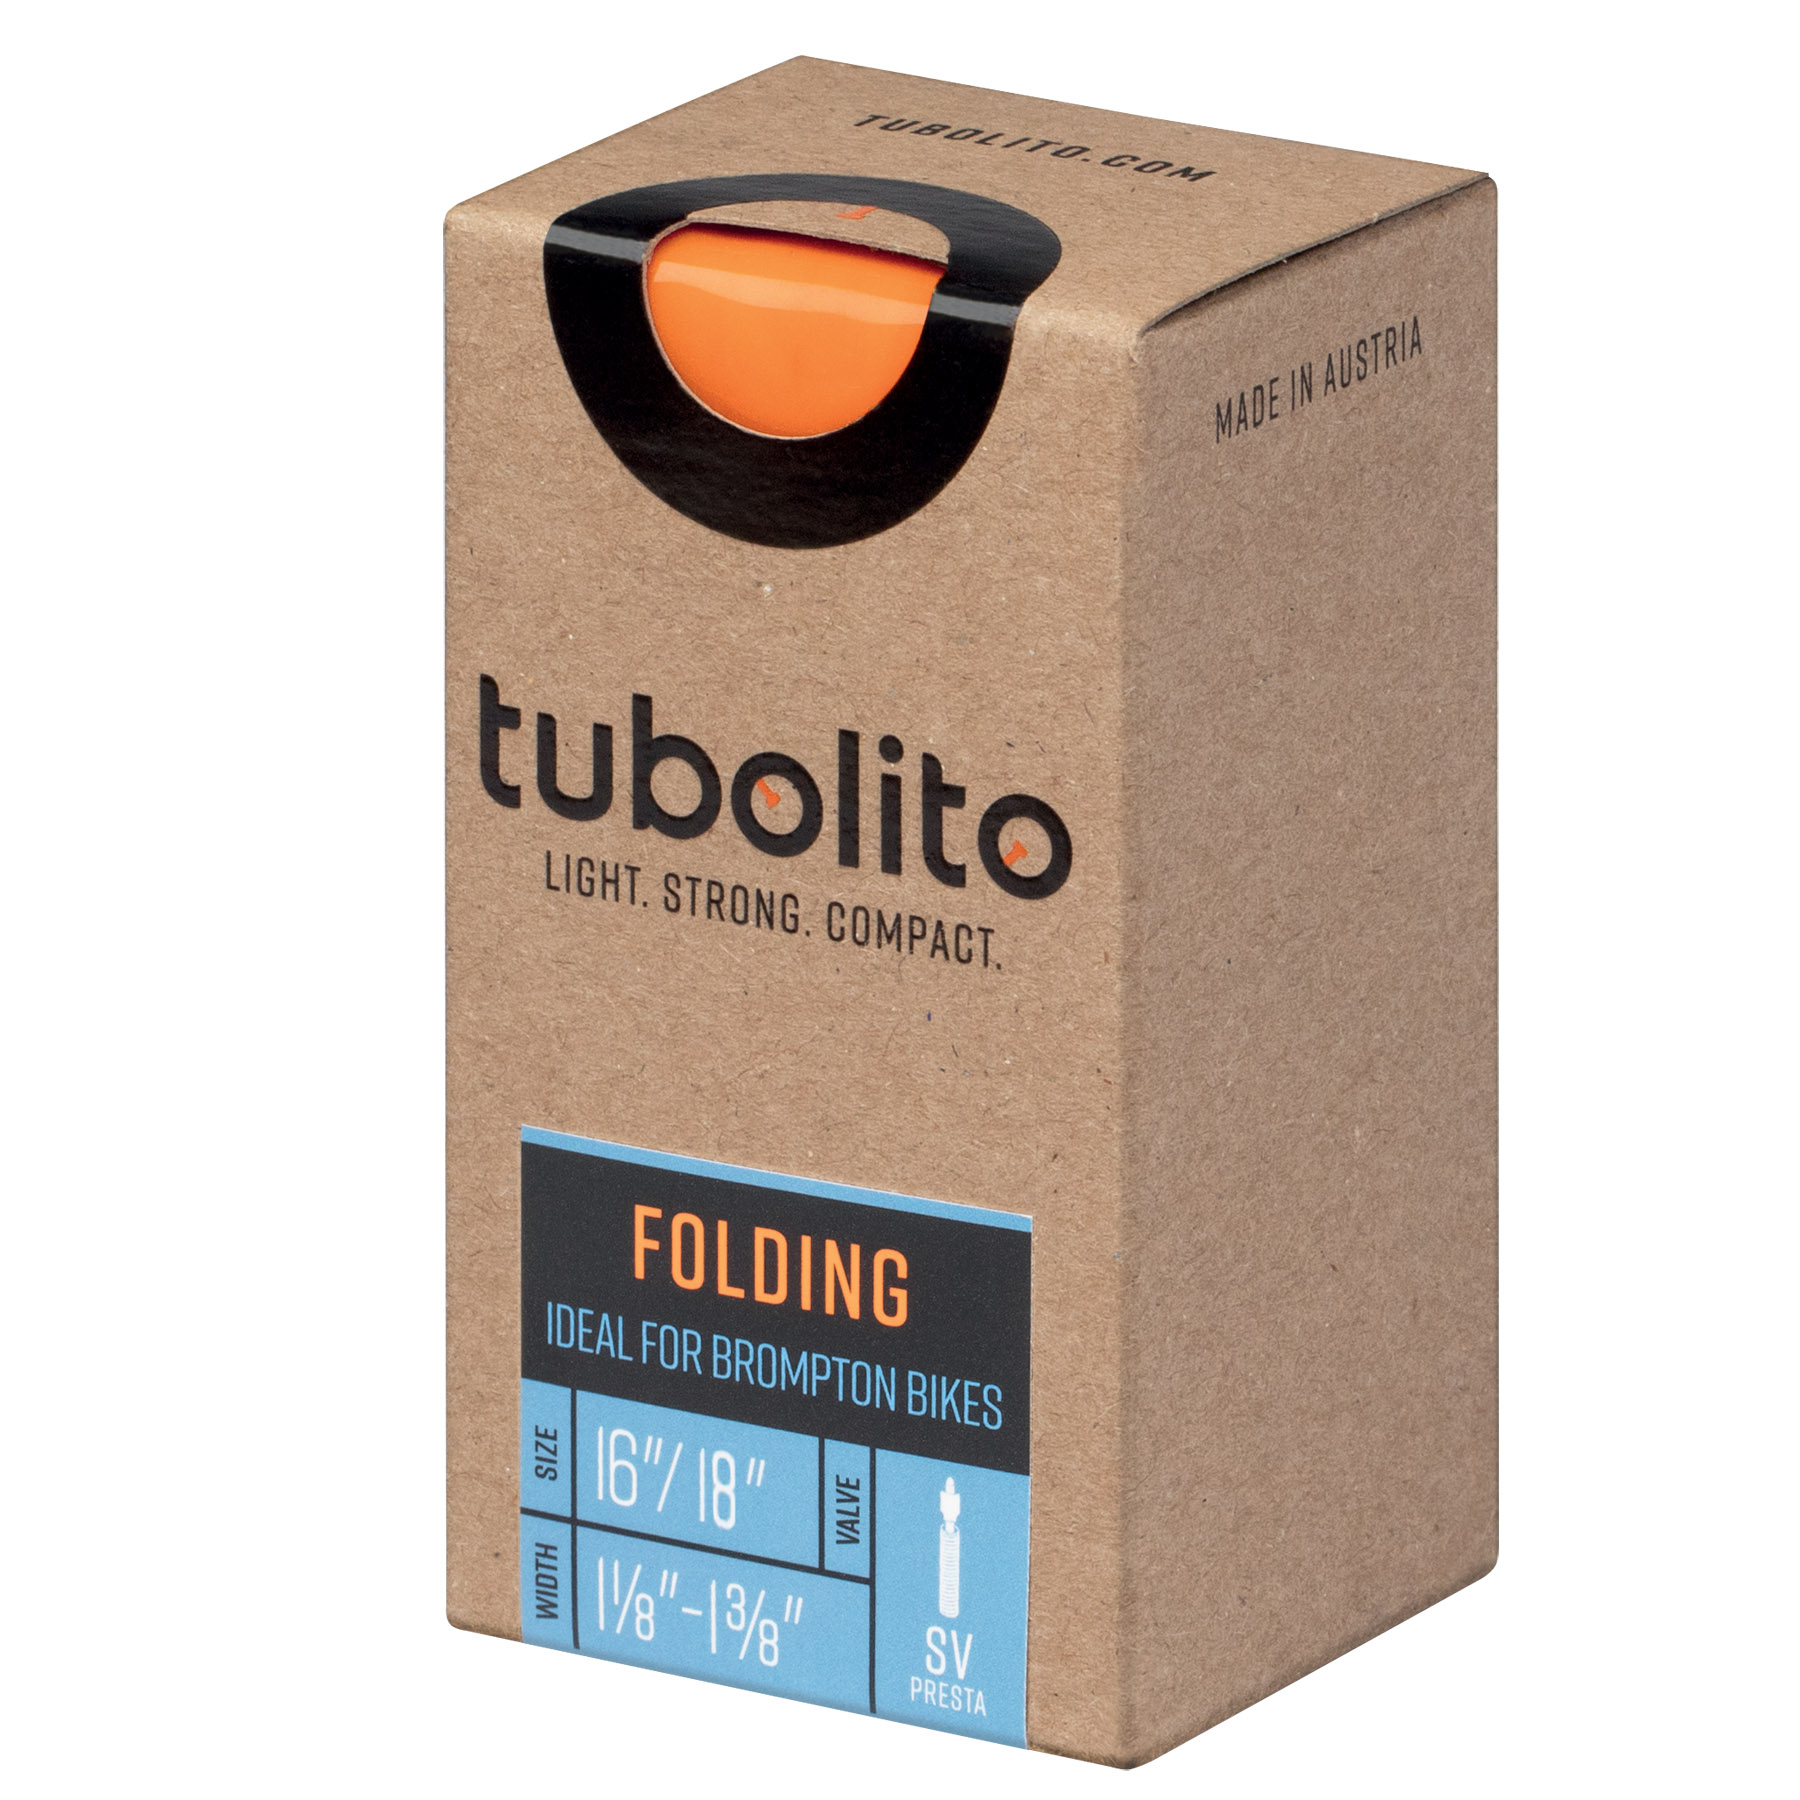 Foto van Tubolito Tubo Foldingbike Tube - 16"x1-1/8-1-3/8" - Presta Valve